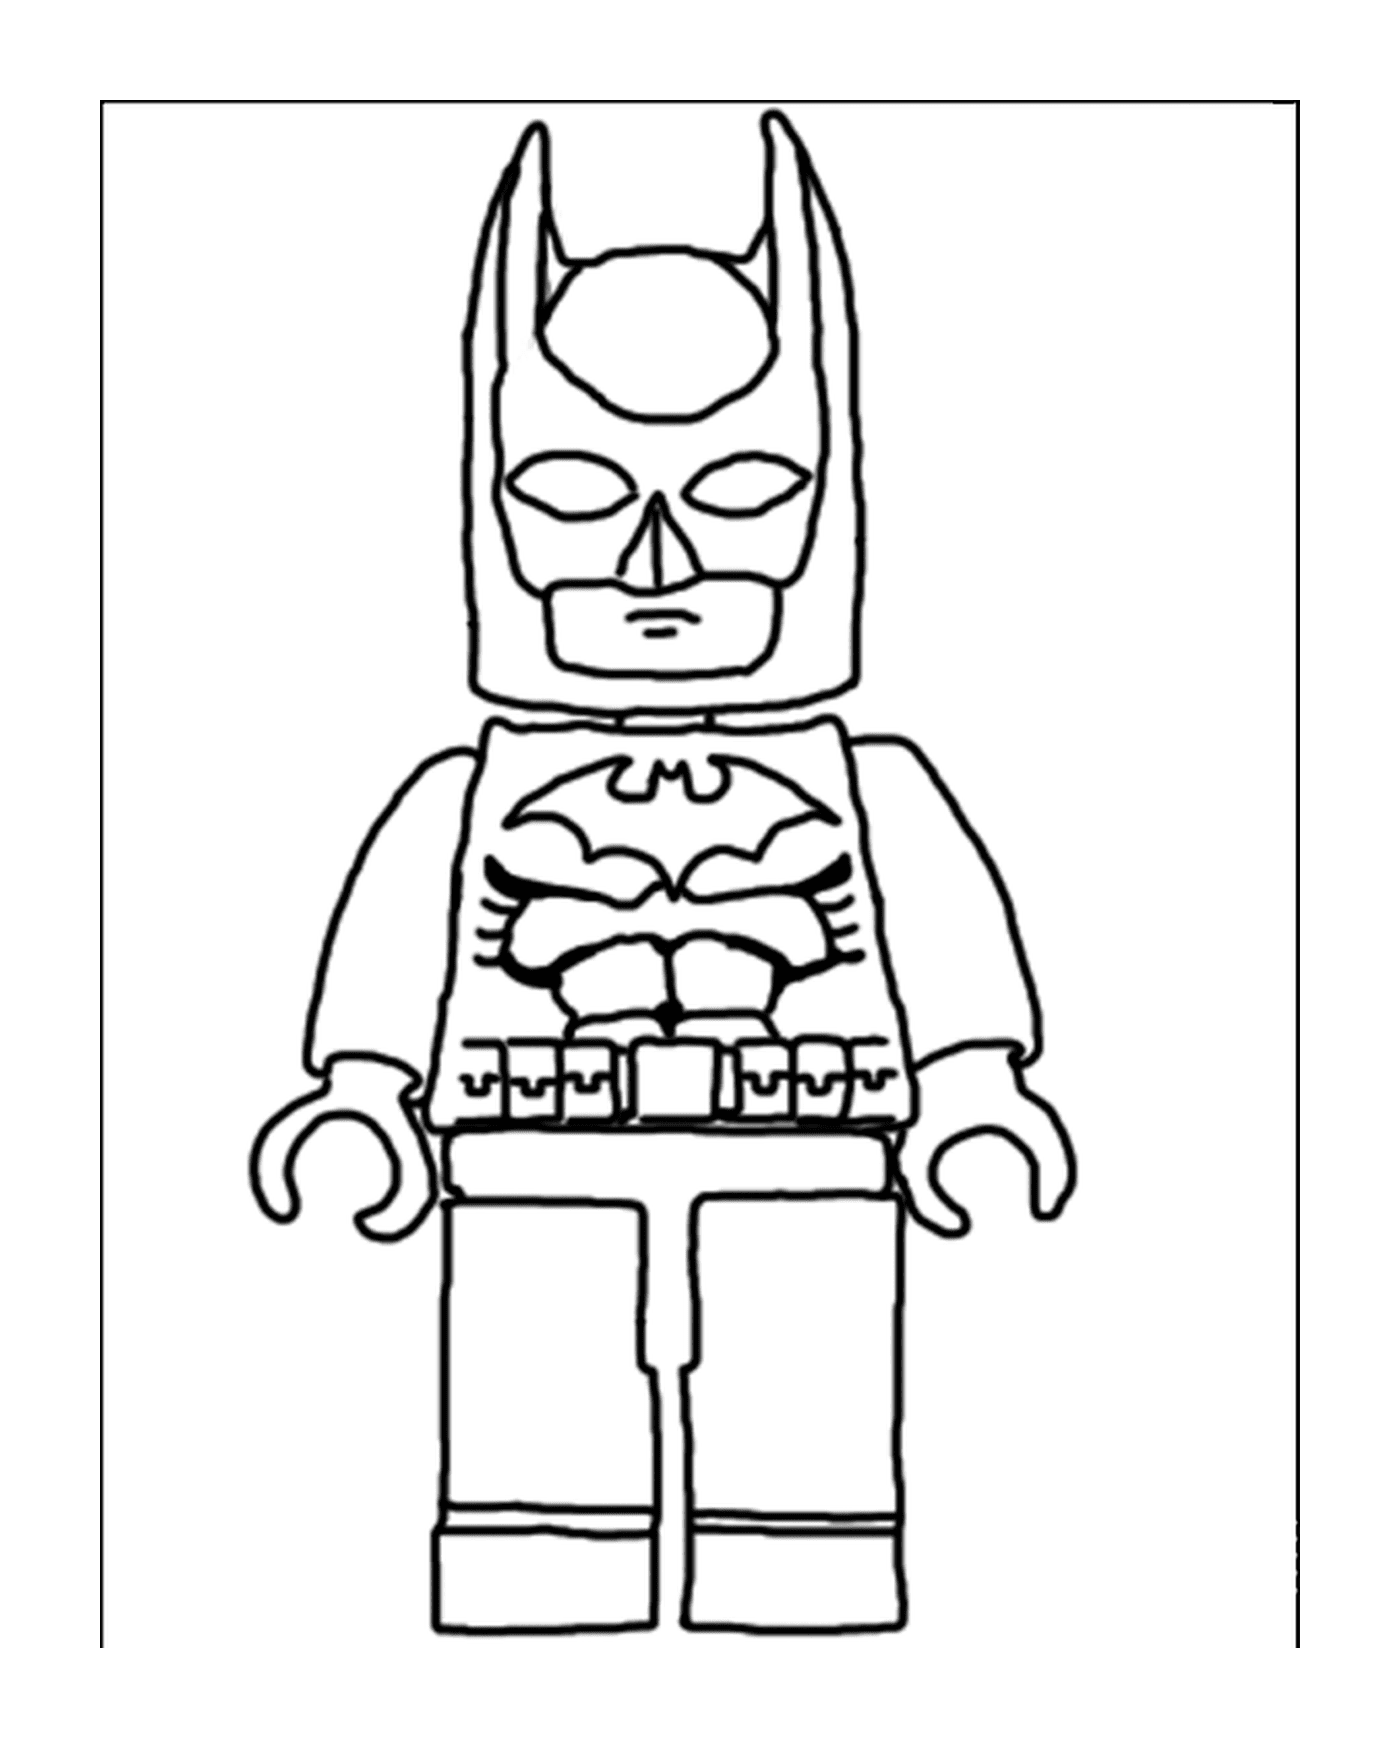  Print and color Lego Batman 